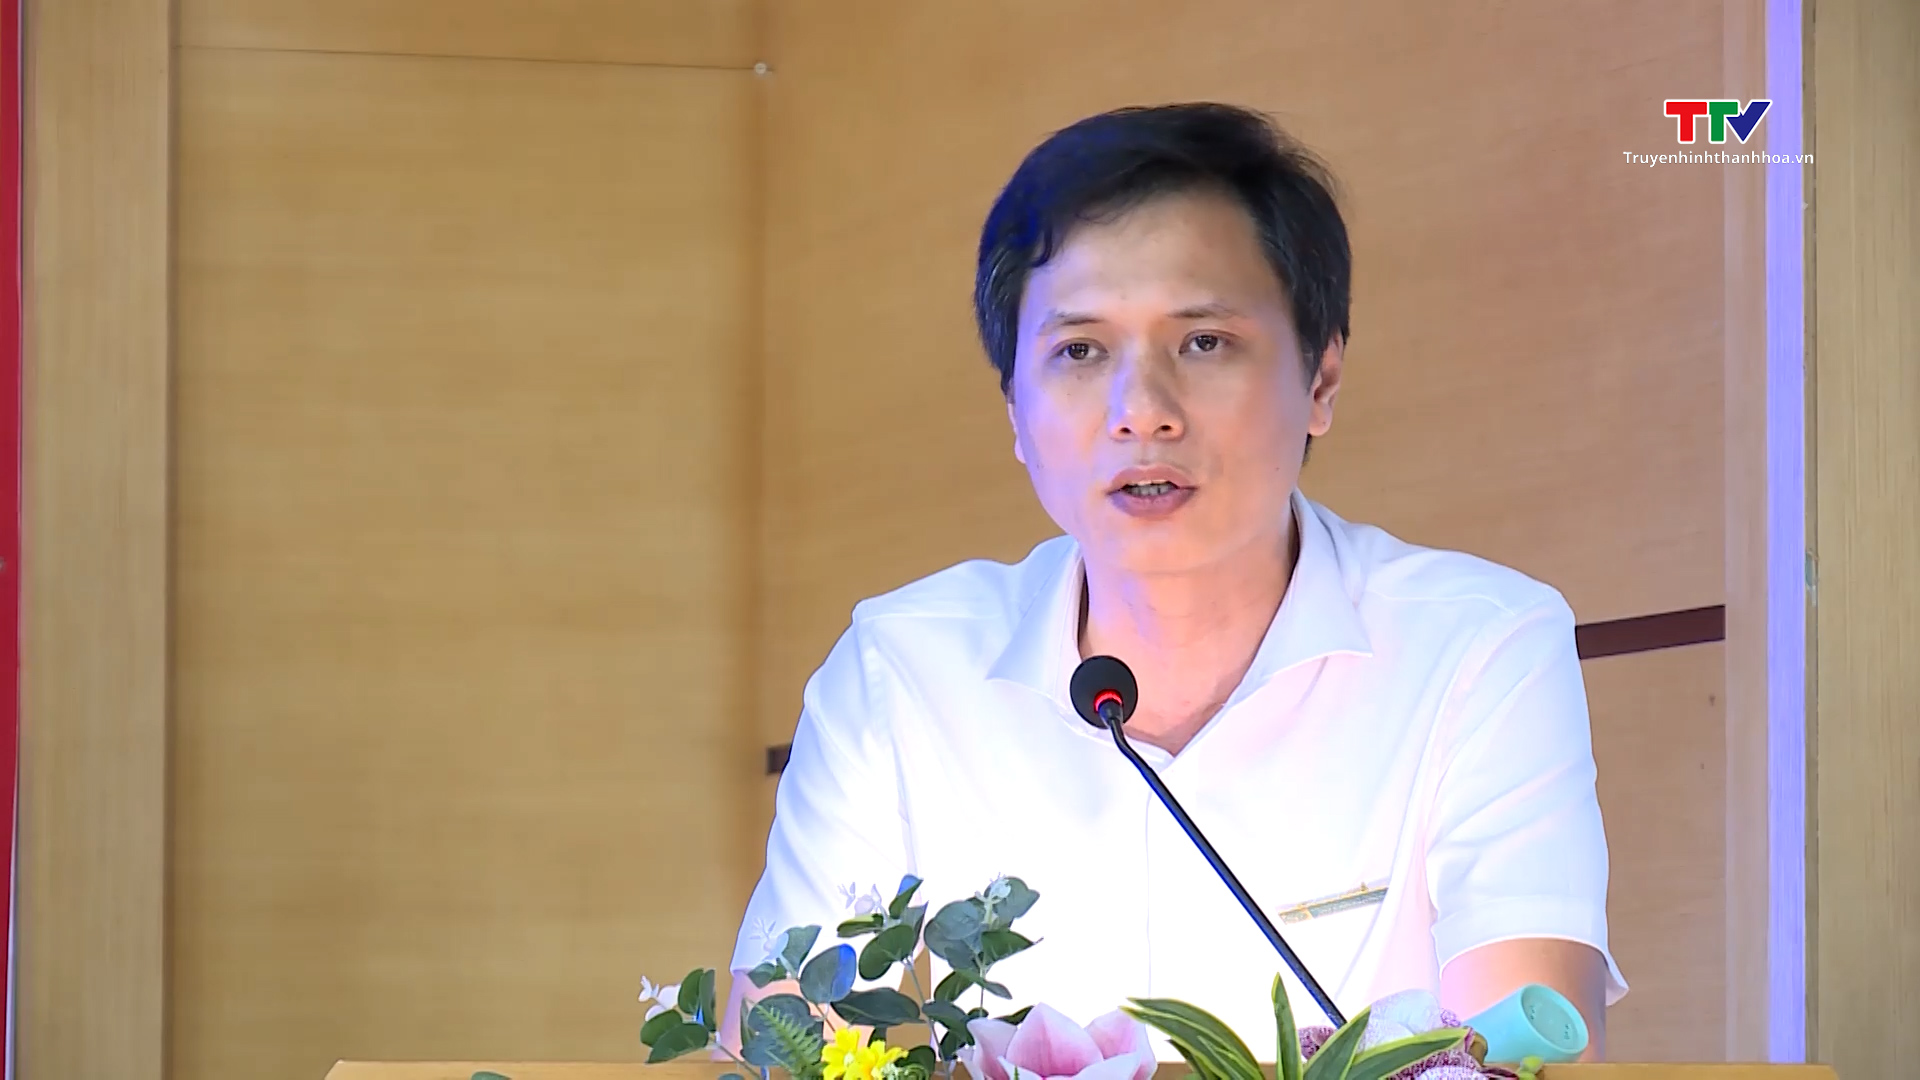 Đại biểu Quốc hội tỉnh Thanh Hoá tiếp xúc cử tri theo chuyên đề với cử tri bảo hiểm xã hội tỉnh Thanh Hoá- Ảnh 3.